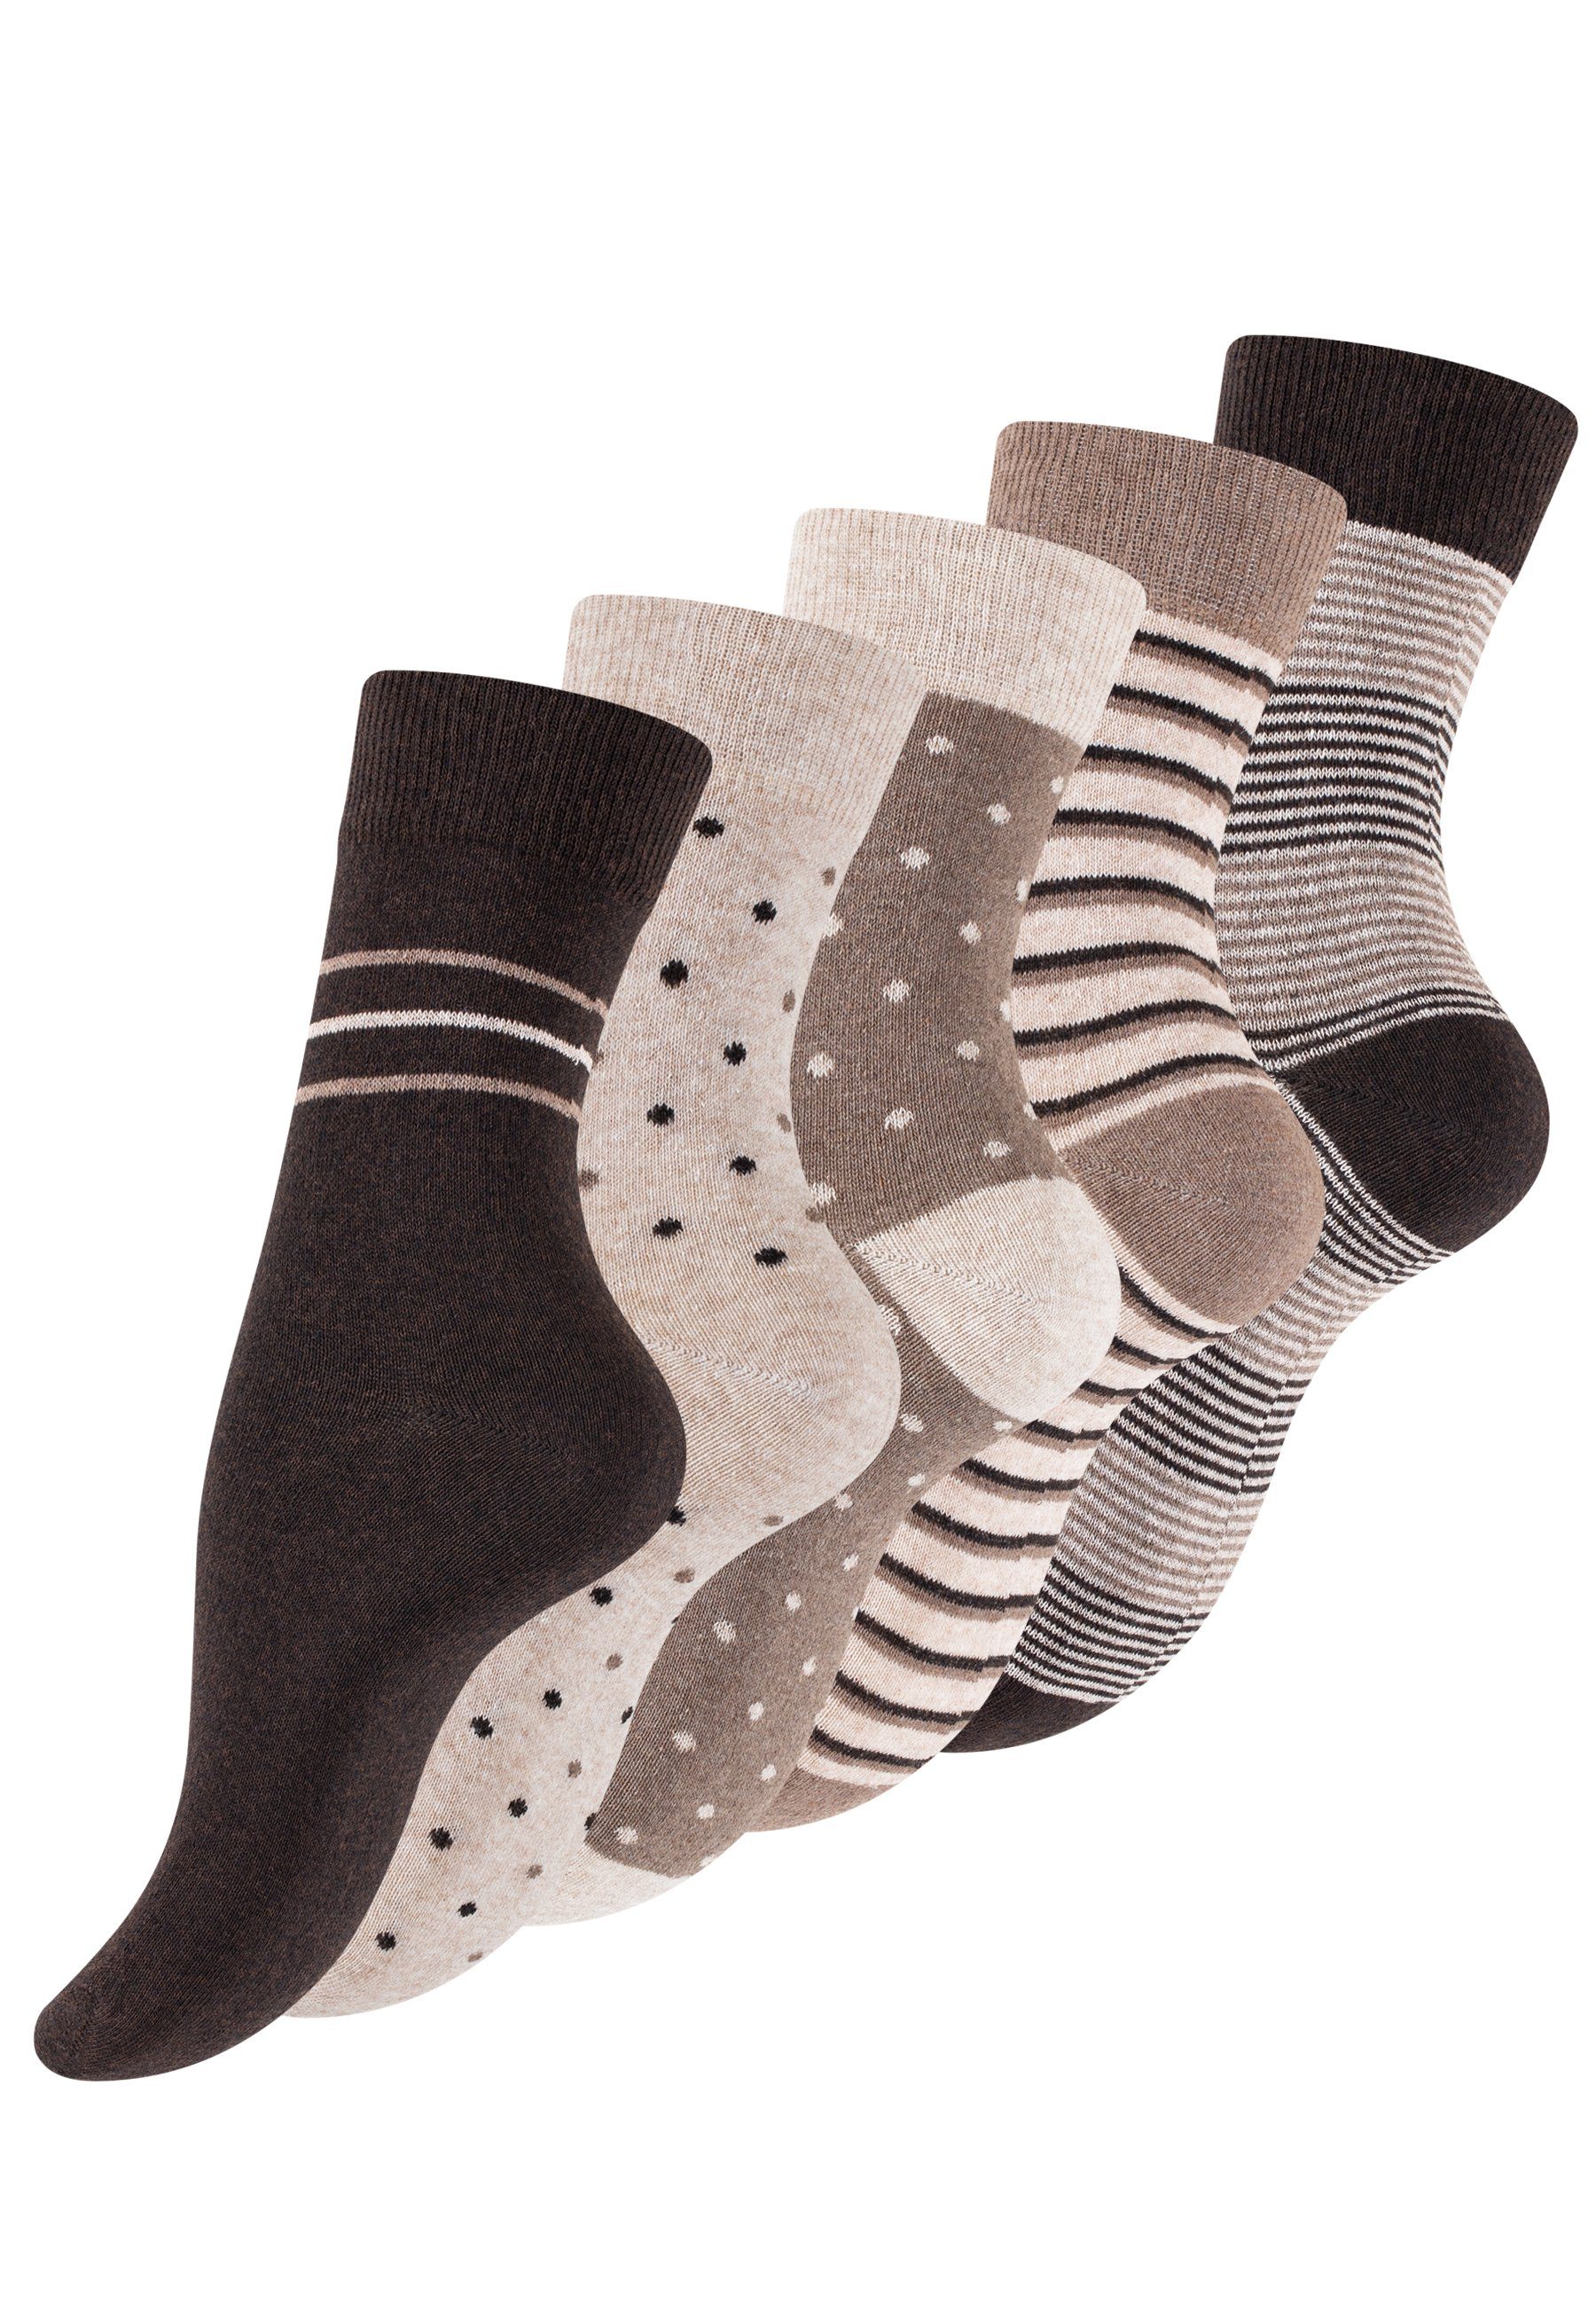 Vincent Creation® Socken (10-Paar) in angenehmer braun/beige Baumwollqualität